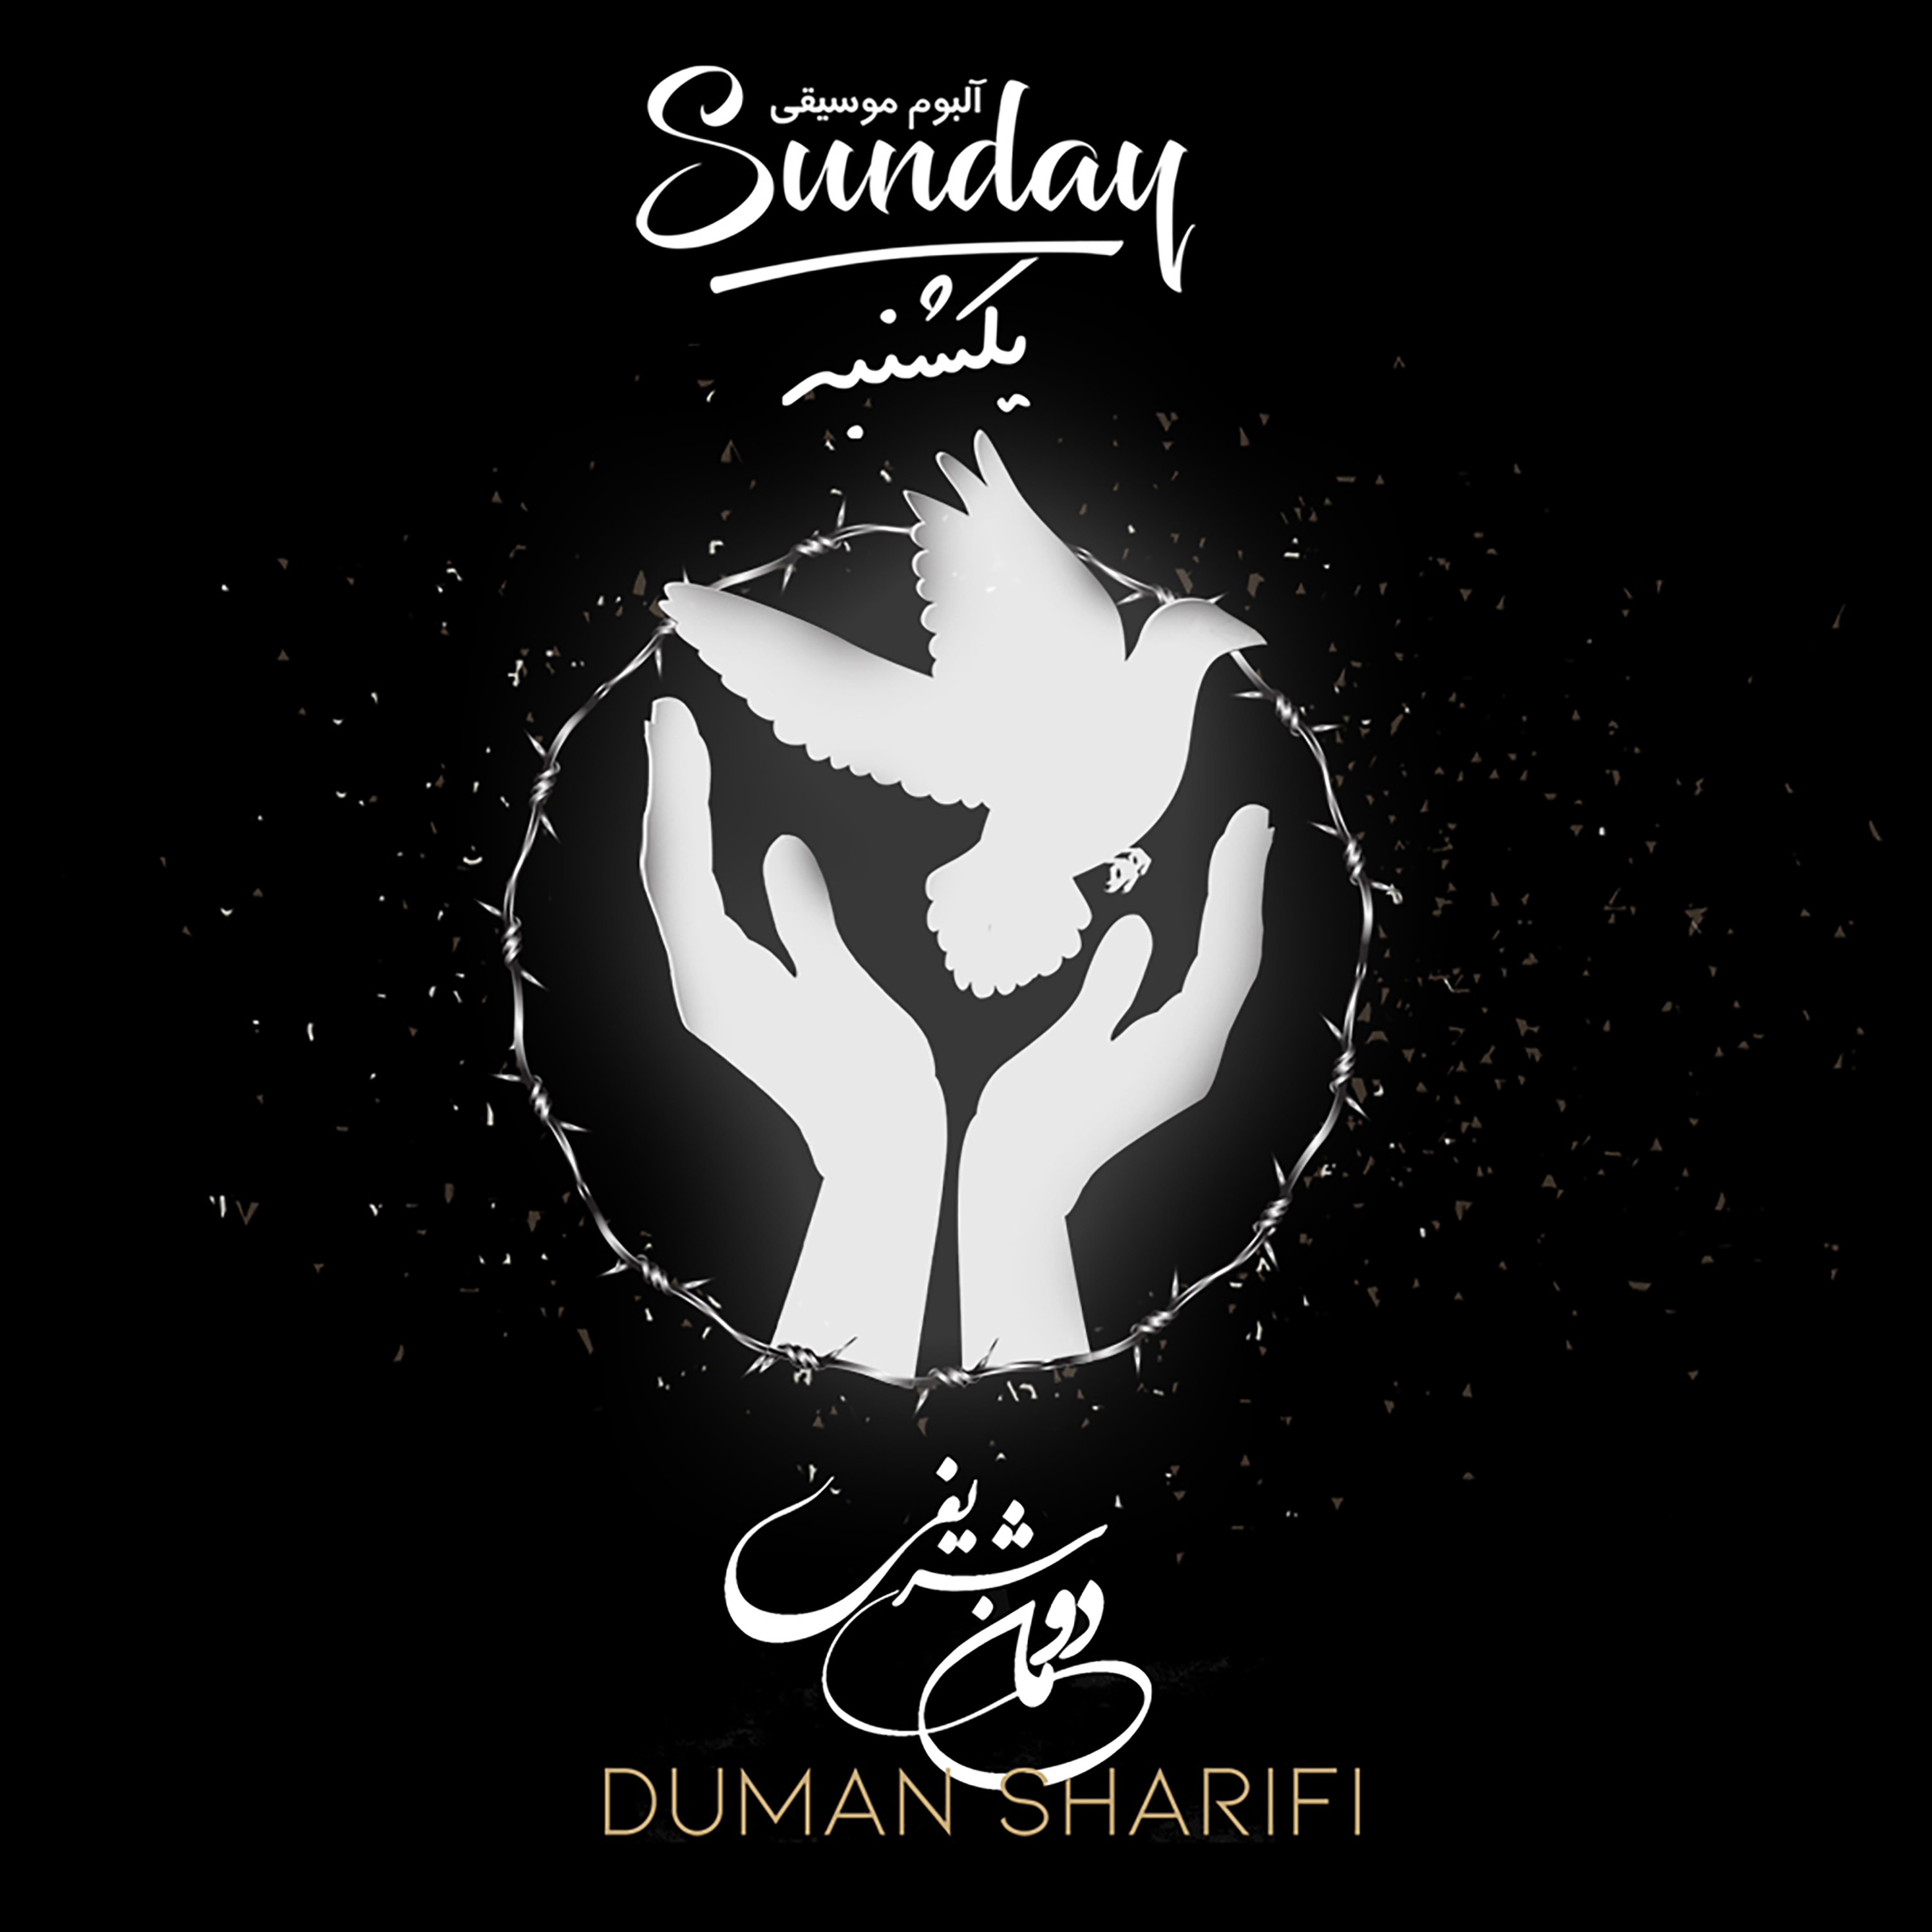  دانلود آهنگ جدید دومان شریفی - رویای تو | Download New Music By Duman Sharifi - Your Dream